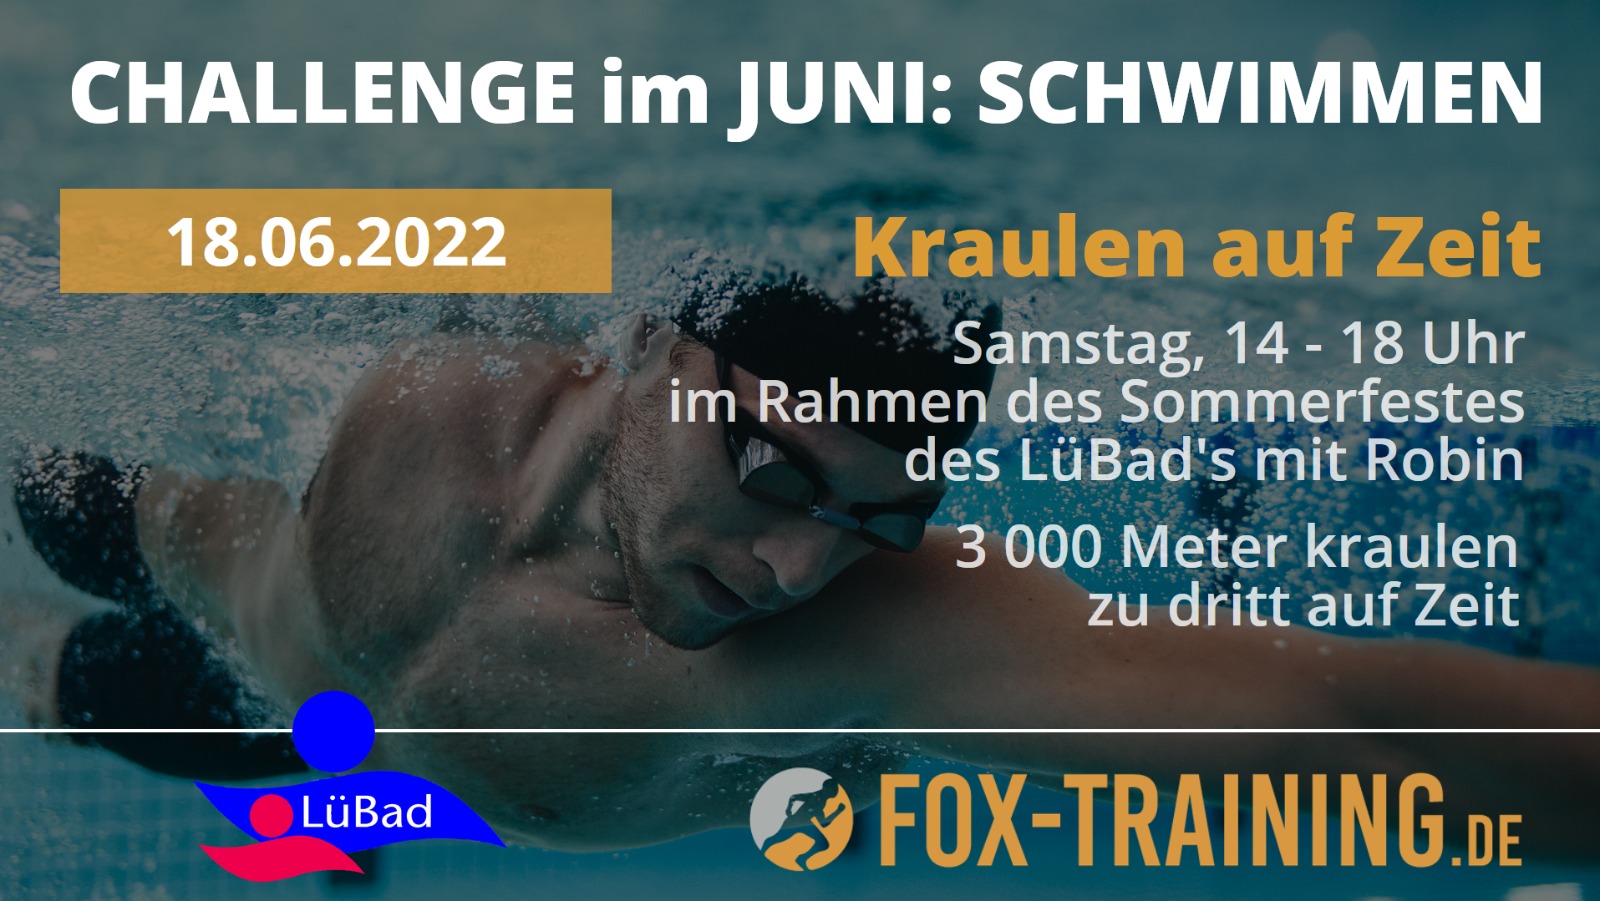 Fox-Training-Challenge-Juni-22-Schwimmen